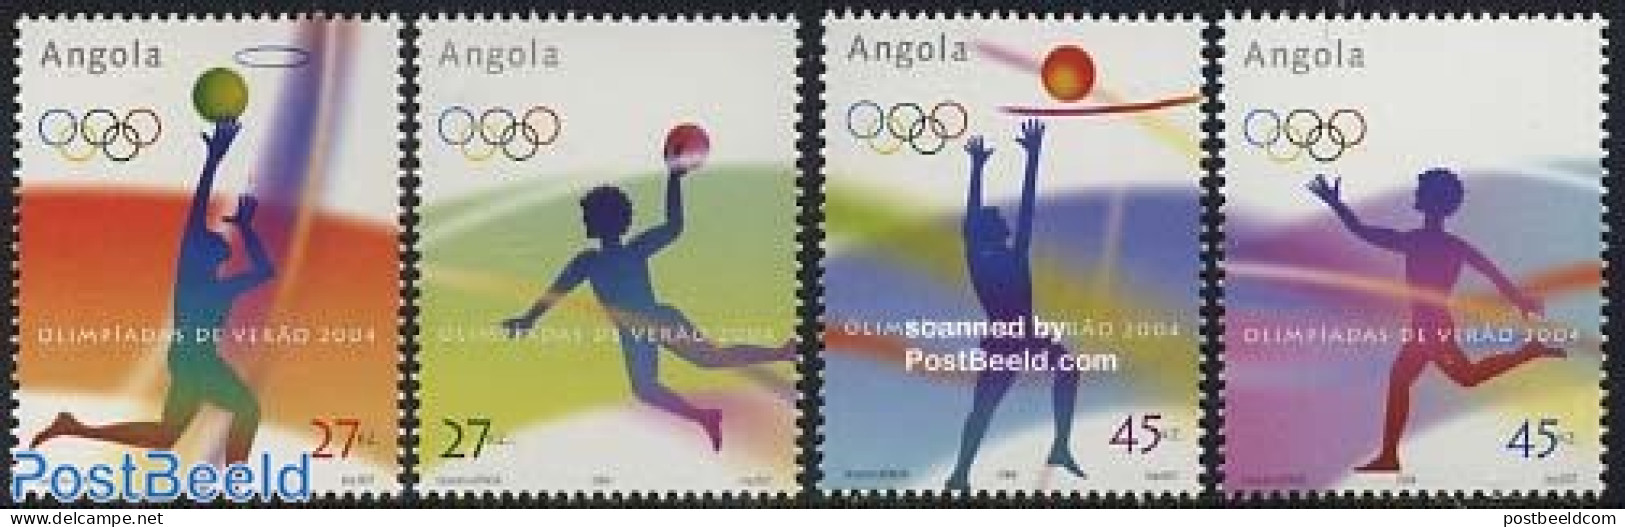 Angola 2004 Olympic Games 4v, Mint NH, Sport - Basketball - Handball - Olympic Games - Volleyball - Basketbal